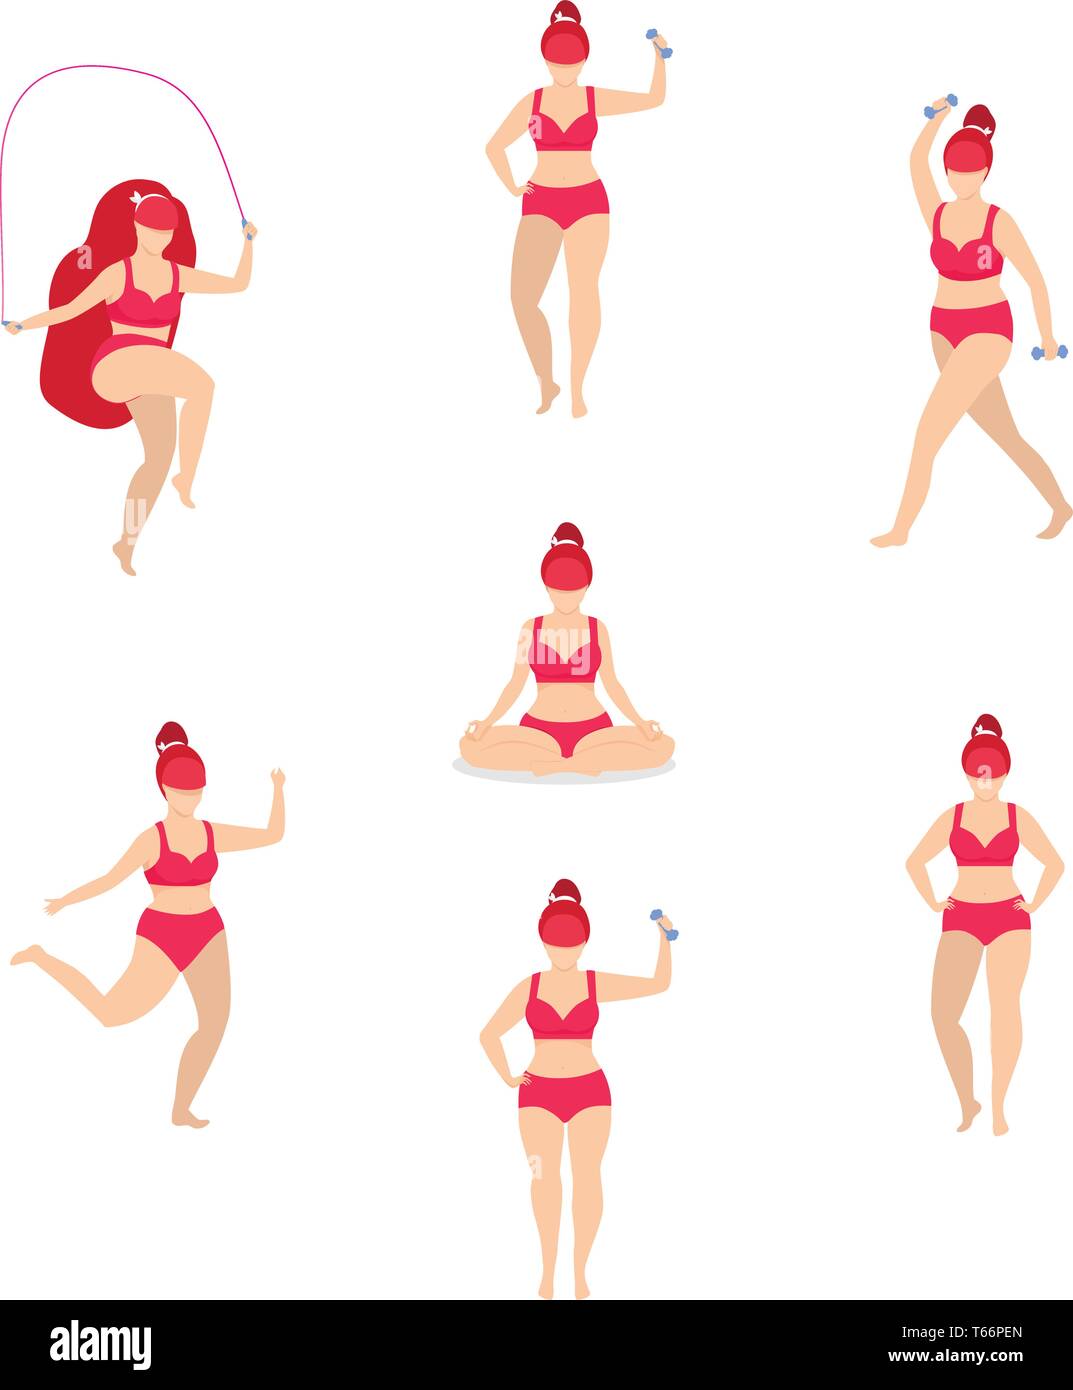 Frau Sport Aktivitäten gesetzt. Mädchen tun, Sport, Yoga, Jogging, Springen mit Seil, Fitness, Hantel Workout, in unterschiedlichen Posen. Cartoon Flach Stock Vektor